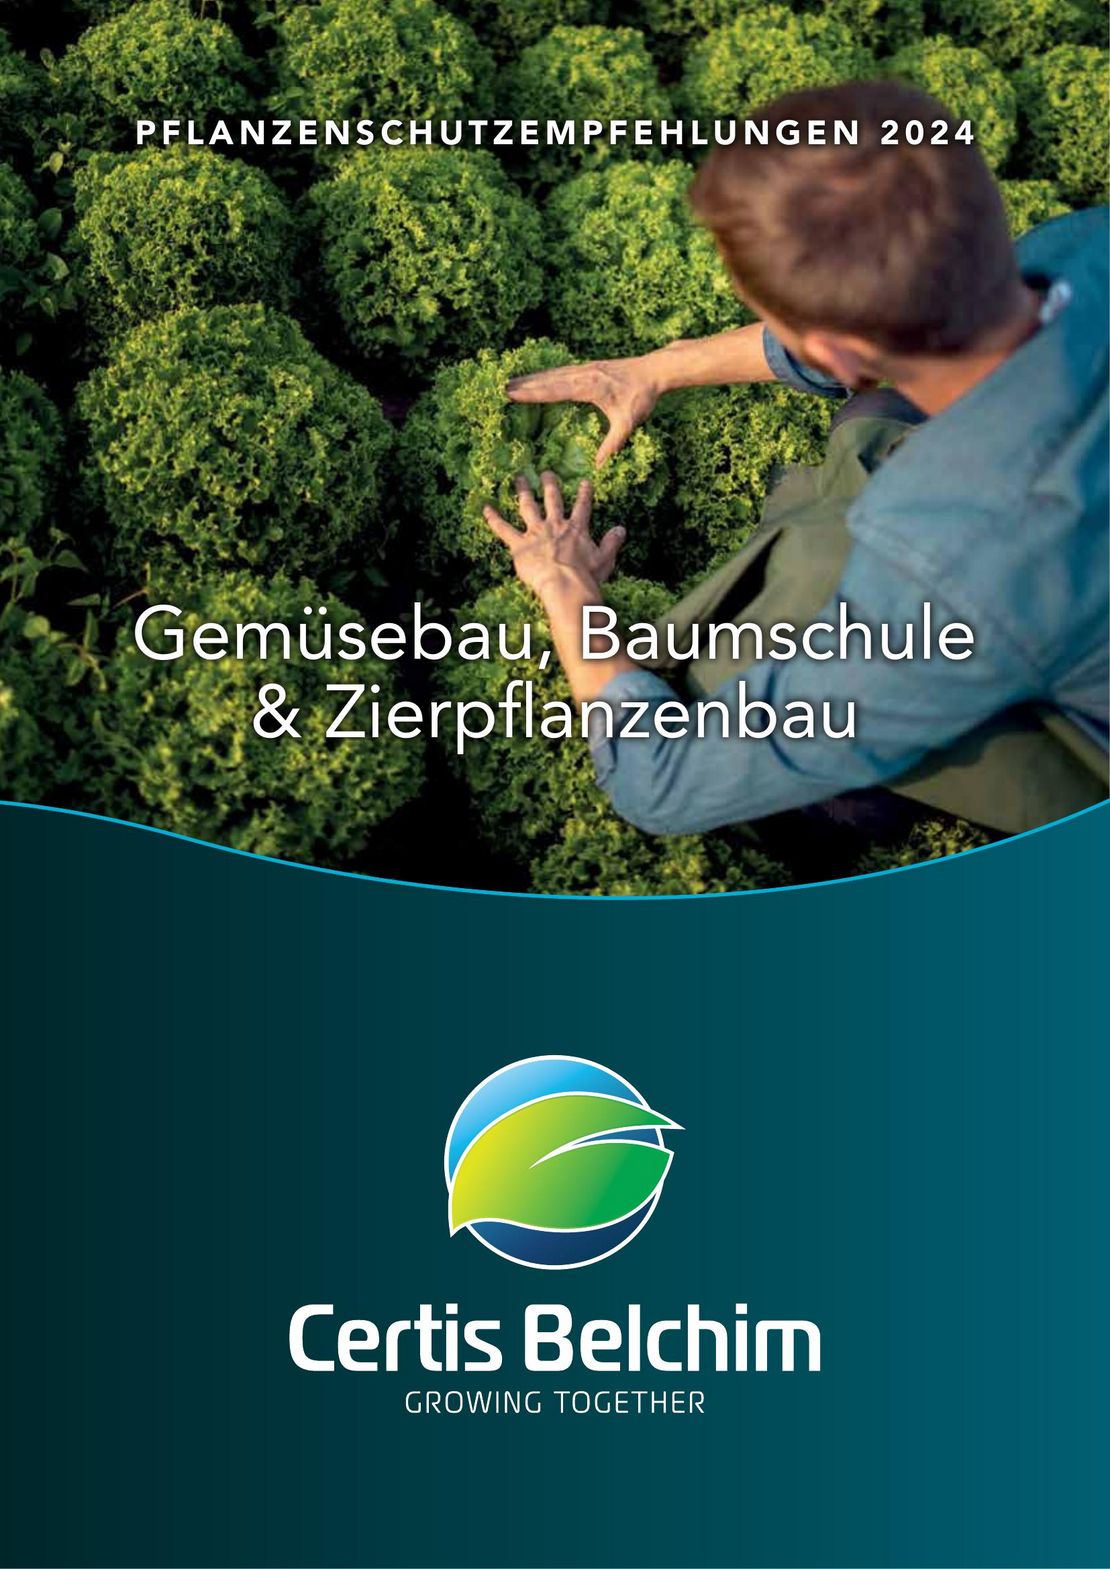 Pflanzenschutzempfehlung Gemüsebau 2024